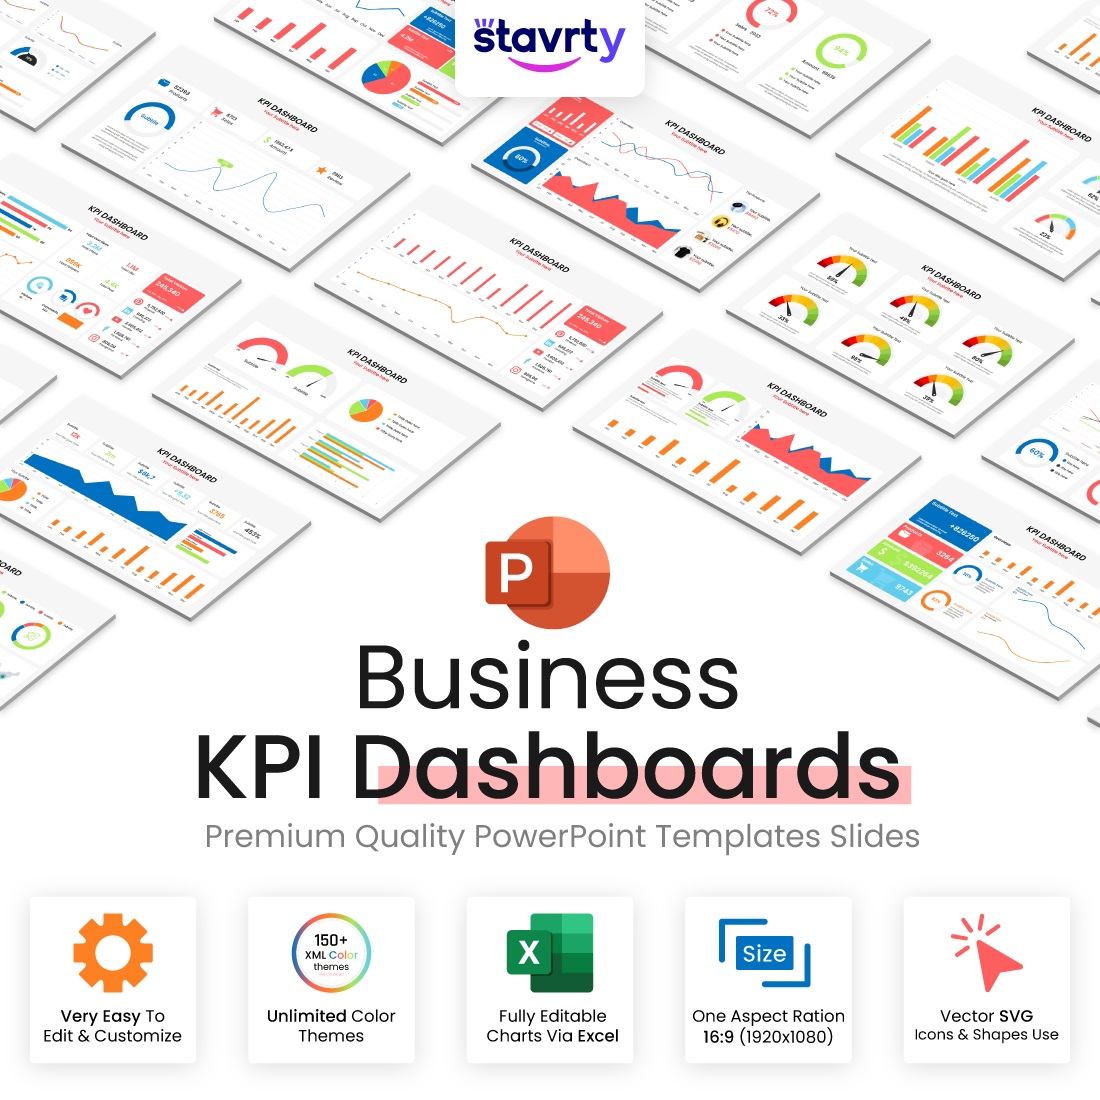 KPI Dashboard Presentation slides cover image.